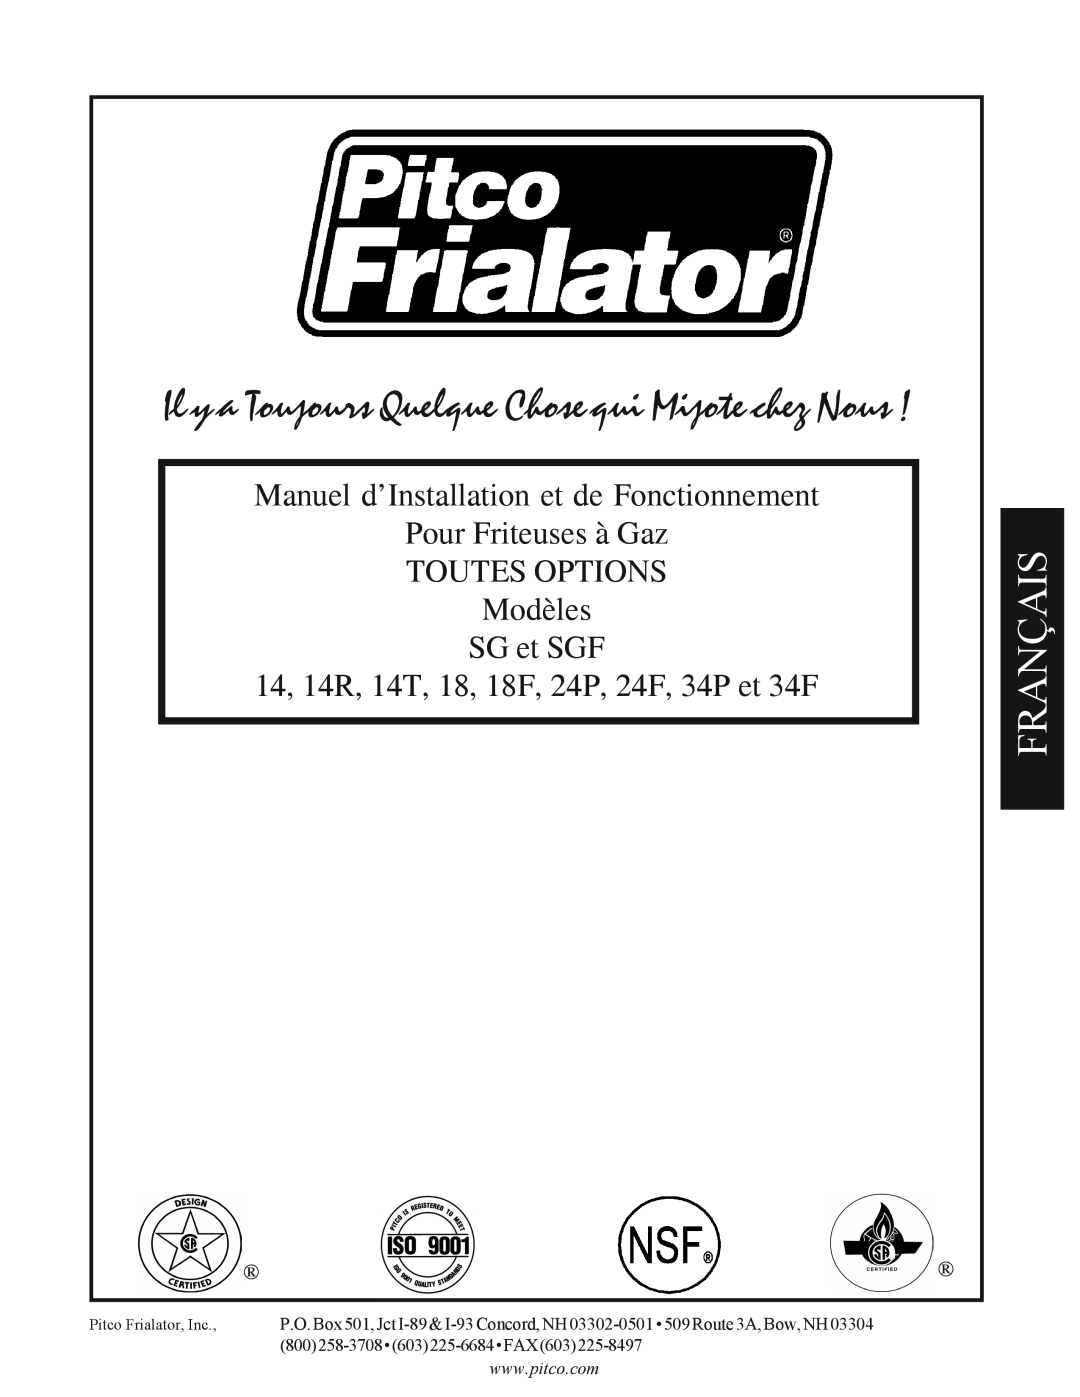 Pitco Frialator SG operation manual Français, Manuel d’Installation et de Fonctionnement Pour Friteuses à Gaz 